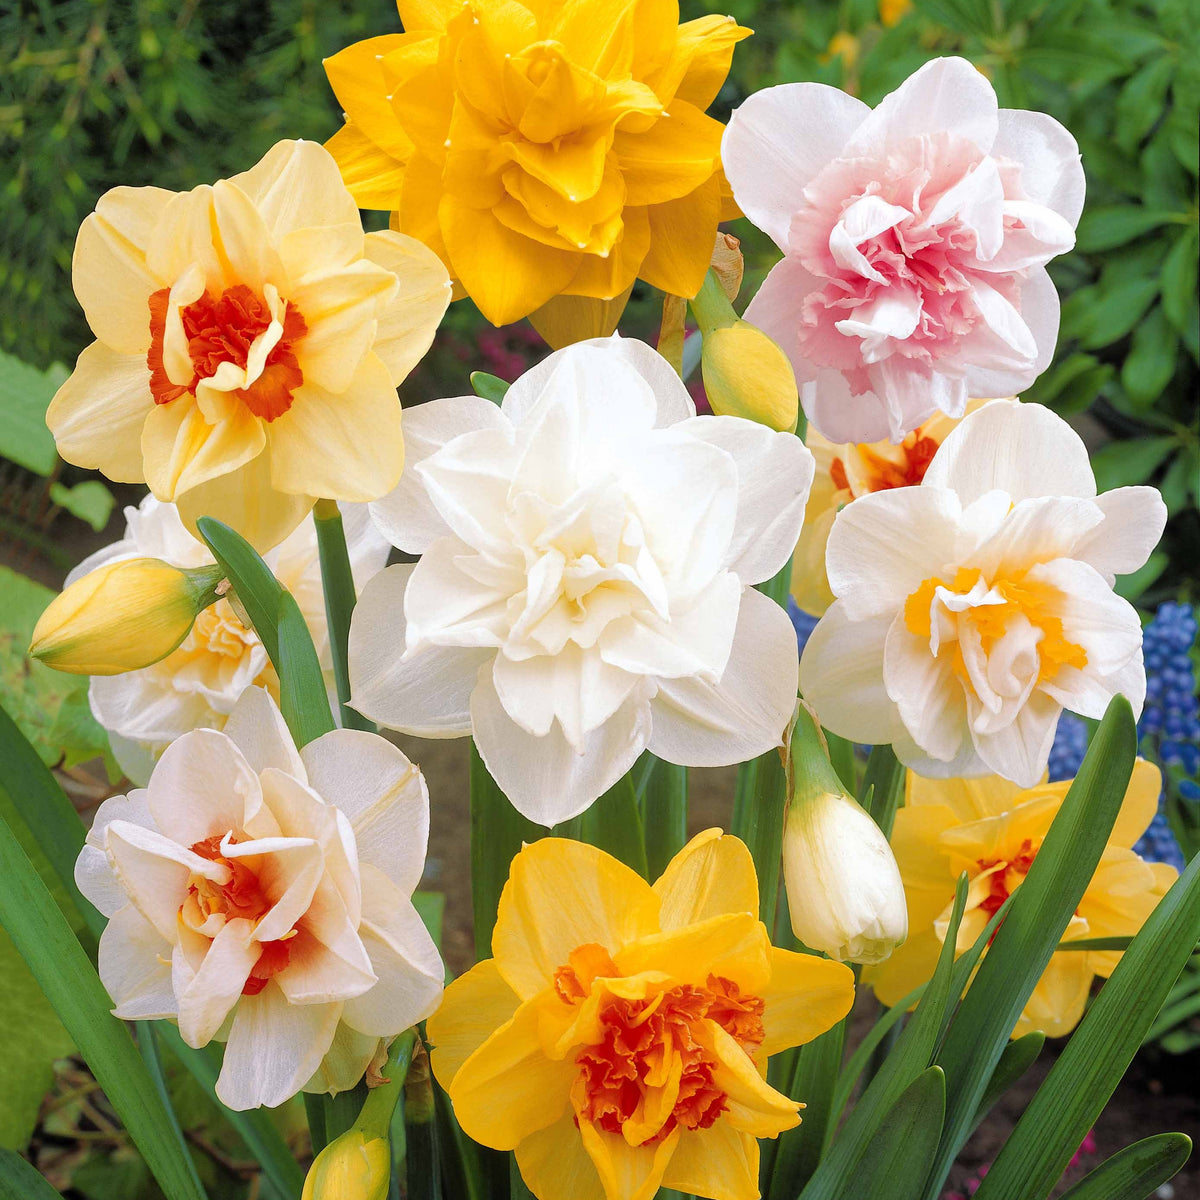 Narcisses à fleurs doubles en mélange - Narcissus - Narcisse